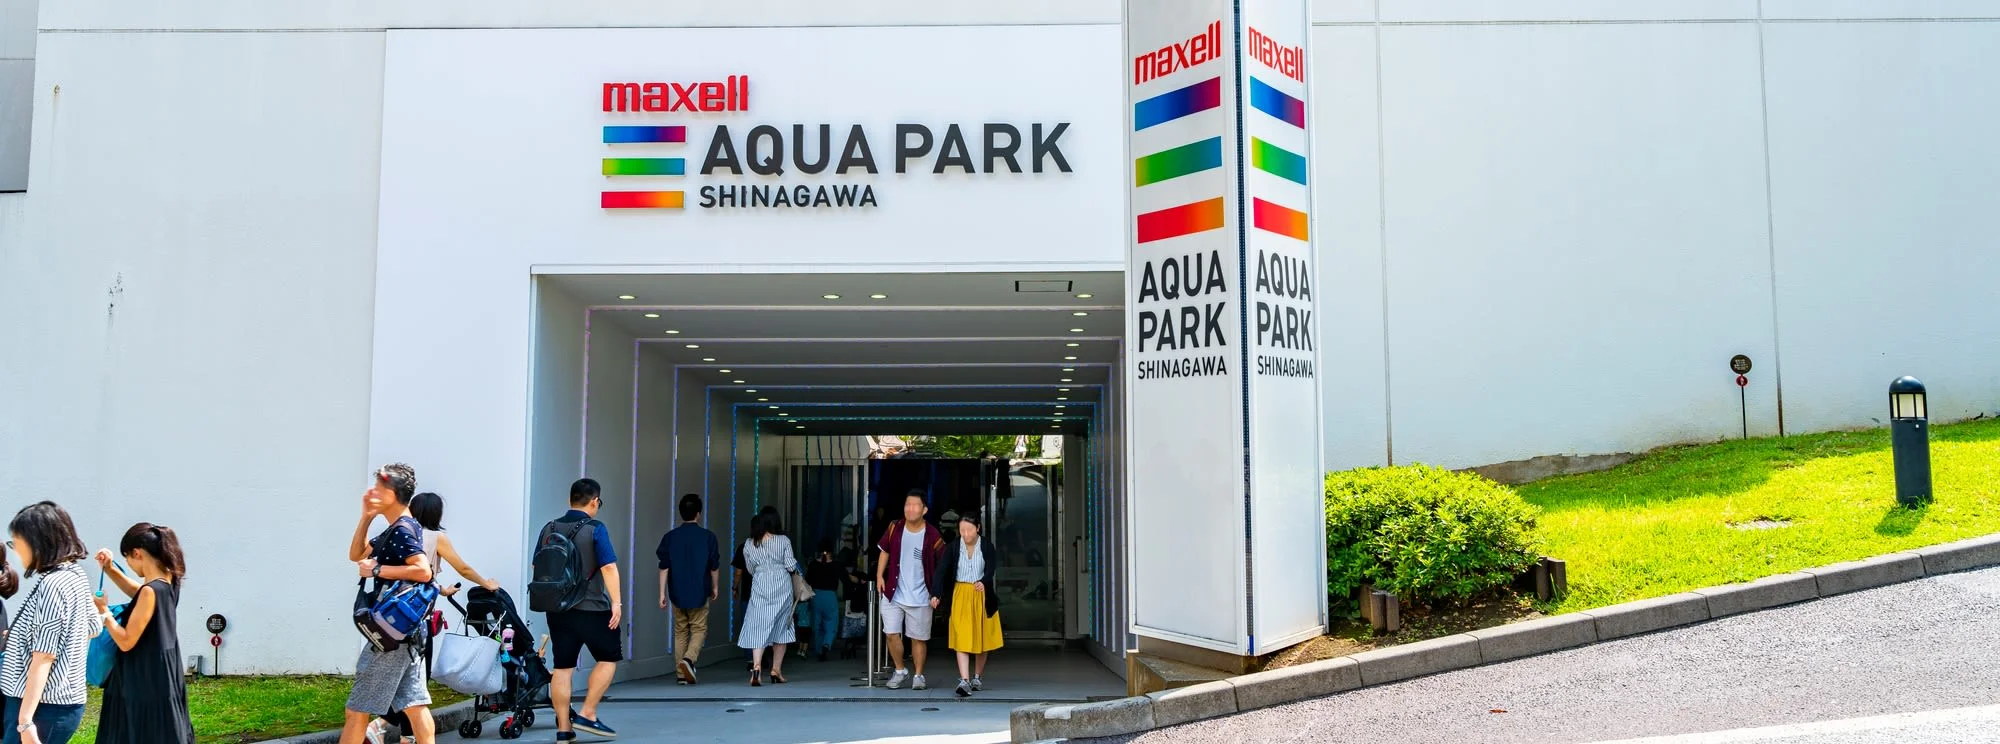 Maxell Aqua Park Shinagawa E-Tickets